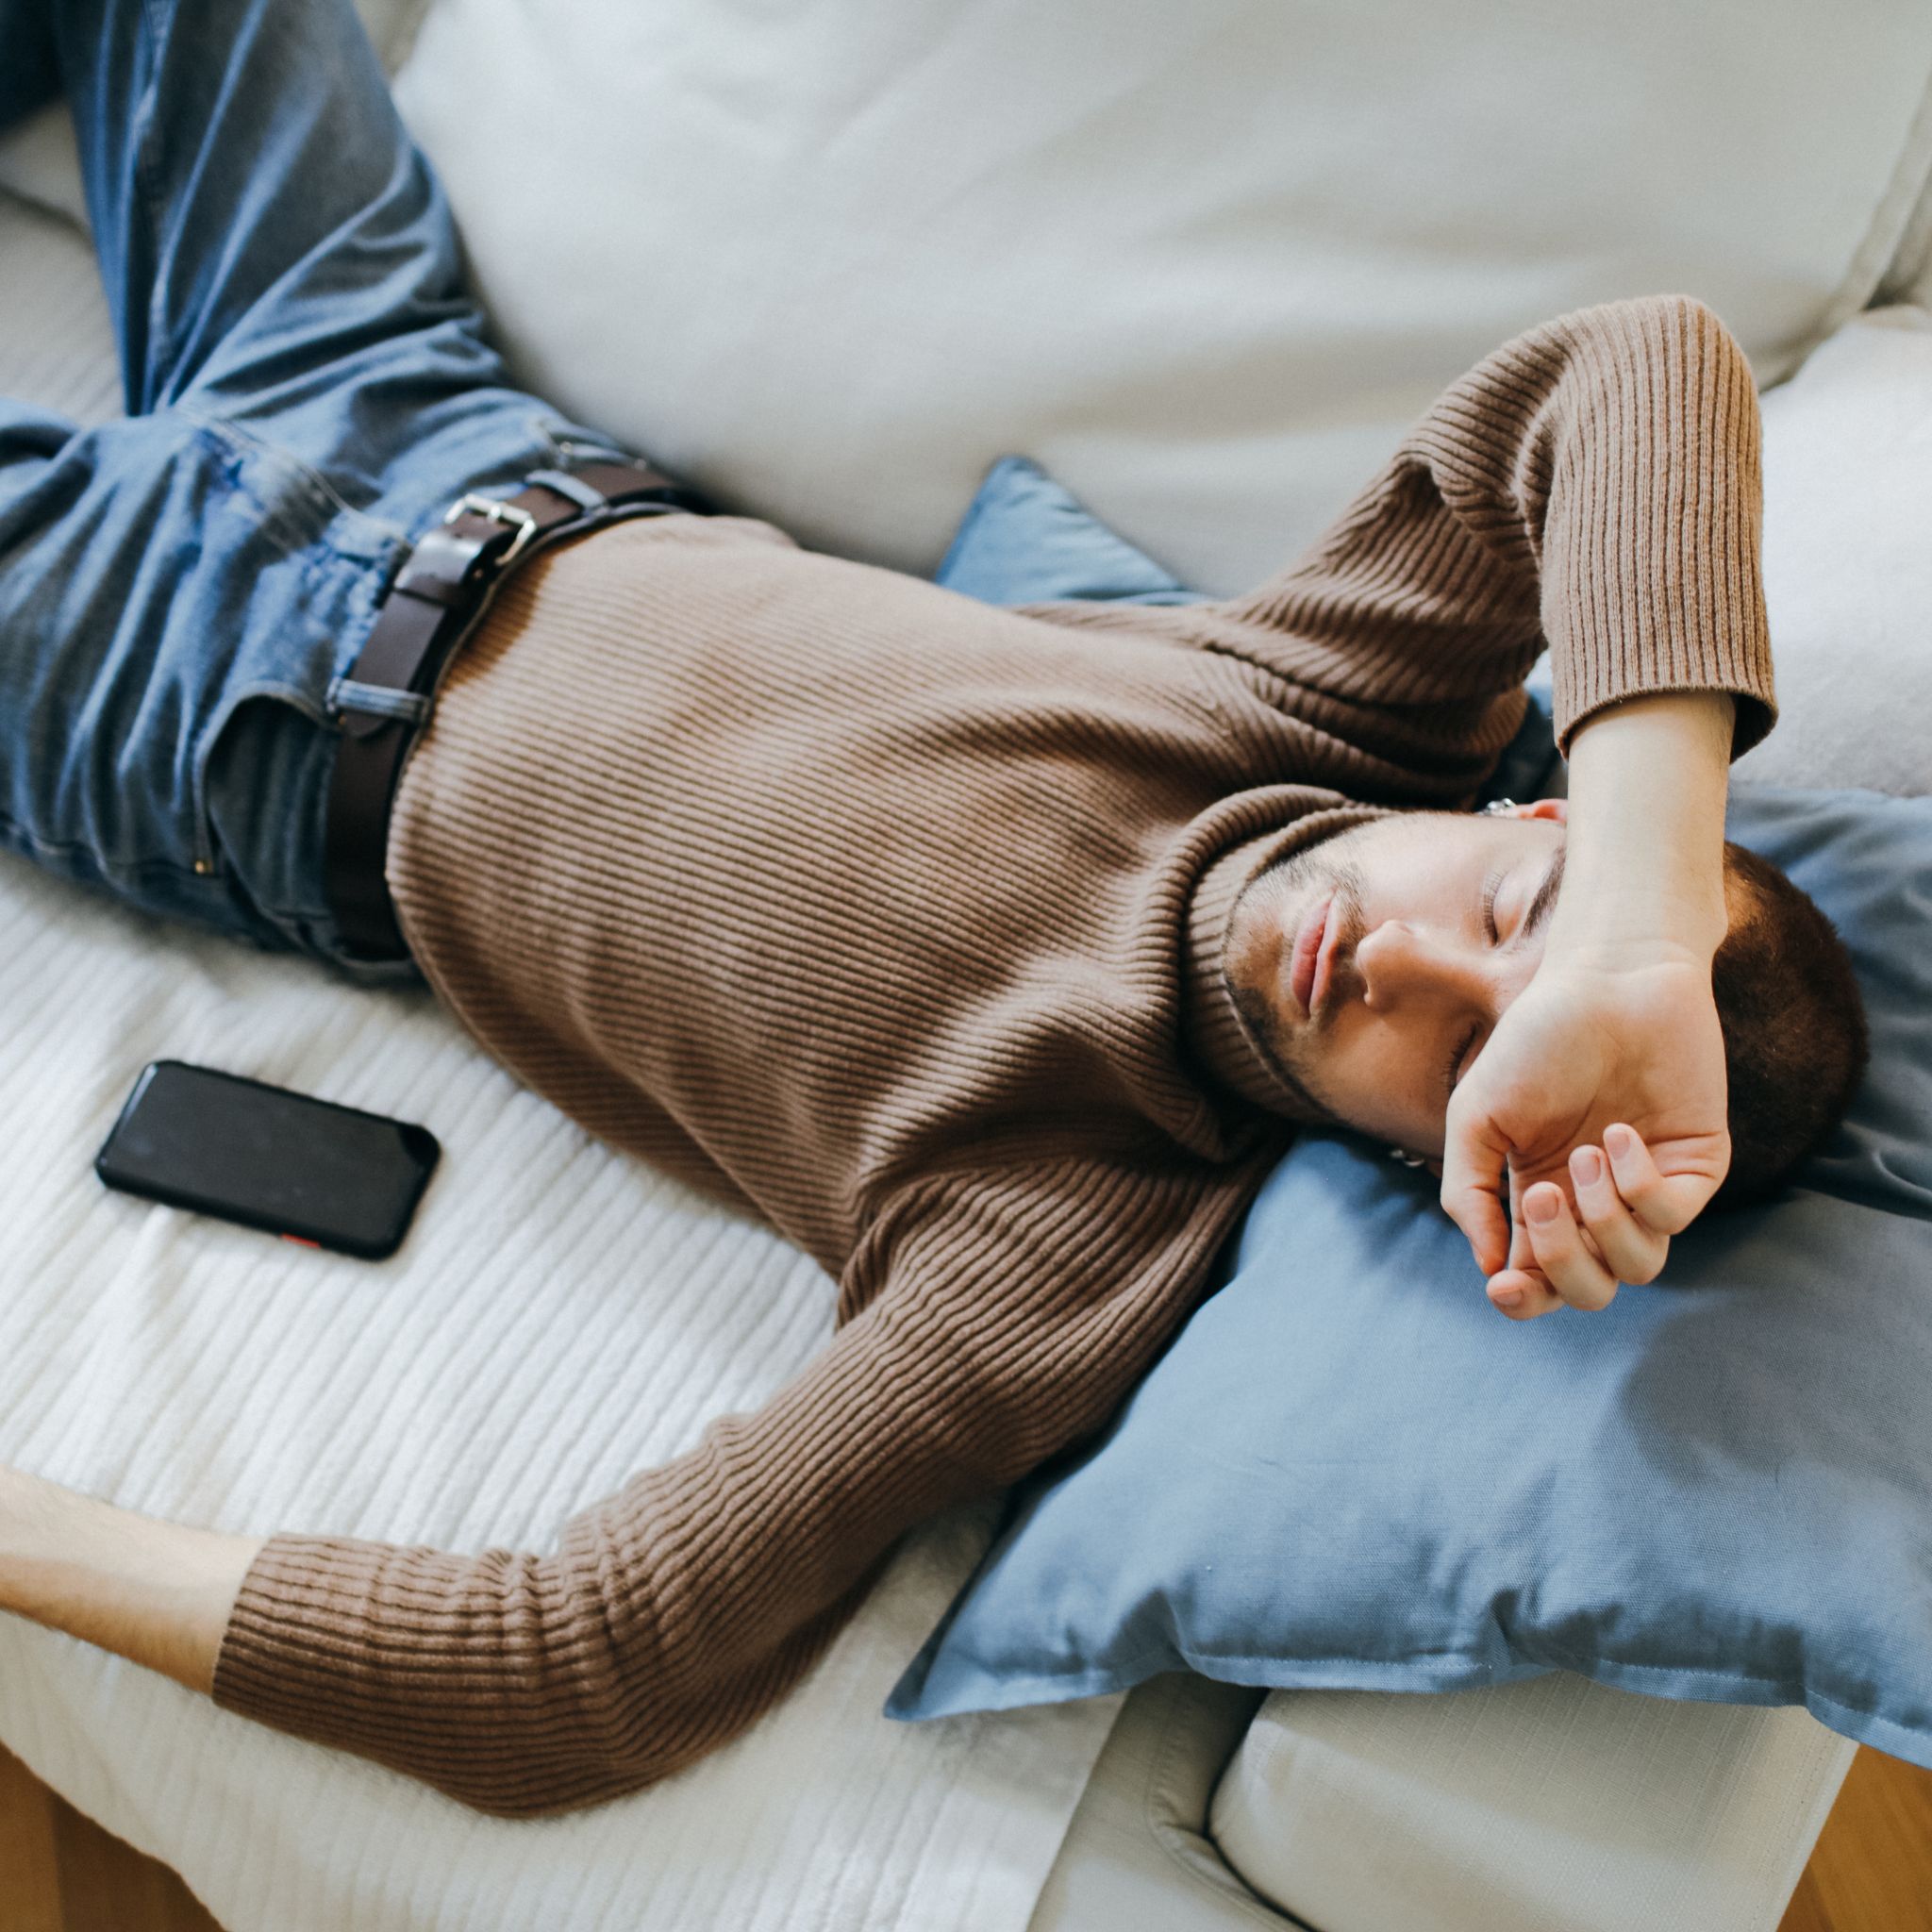 Je spánek vedle mobilního telefonu nebezpečný?